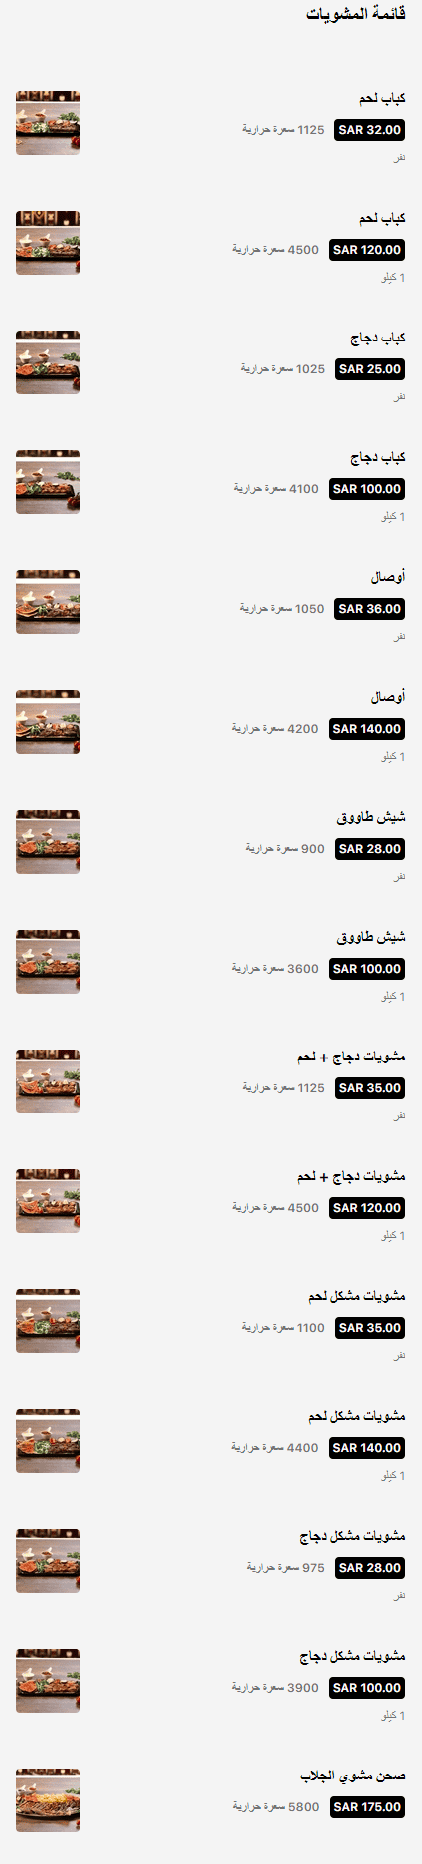 3 7 مطعم الجلاب الرياض | منيو + فروع + اسعار